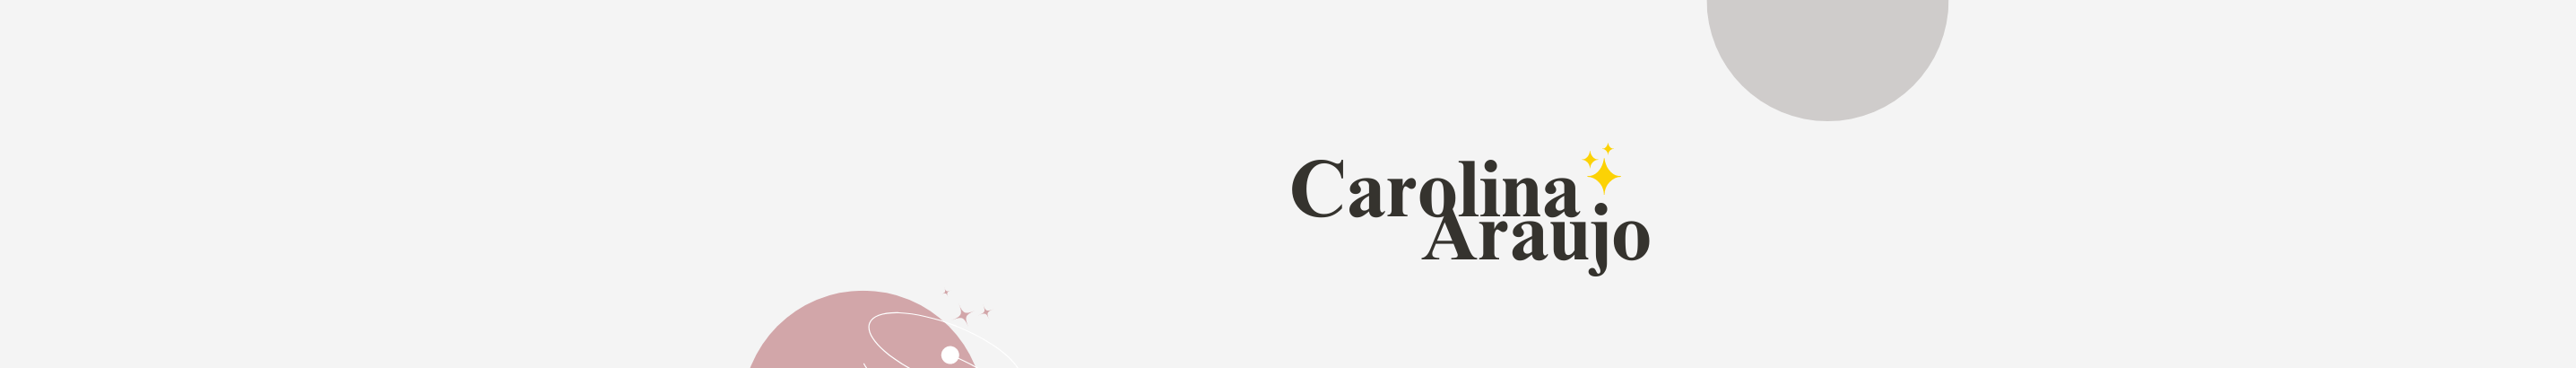 Carolina Araujo's profile banner